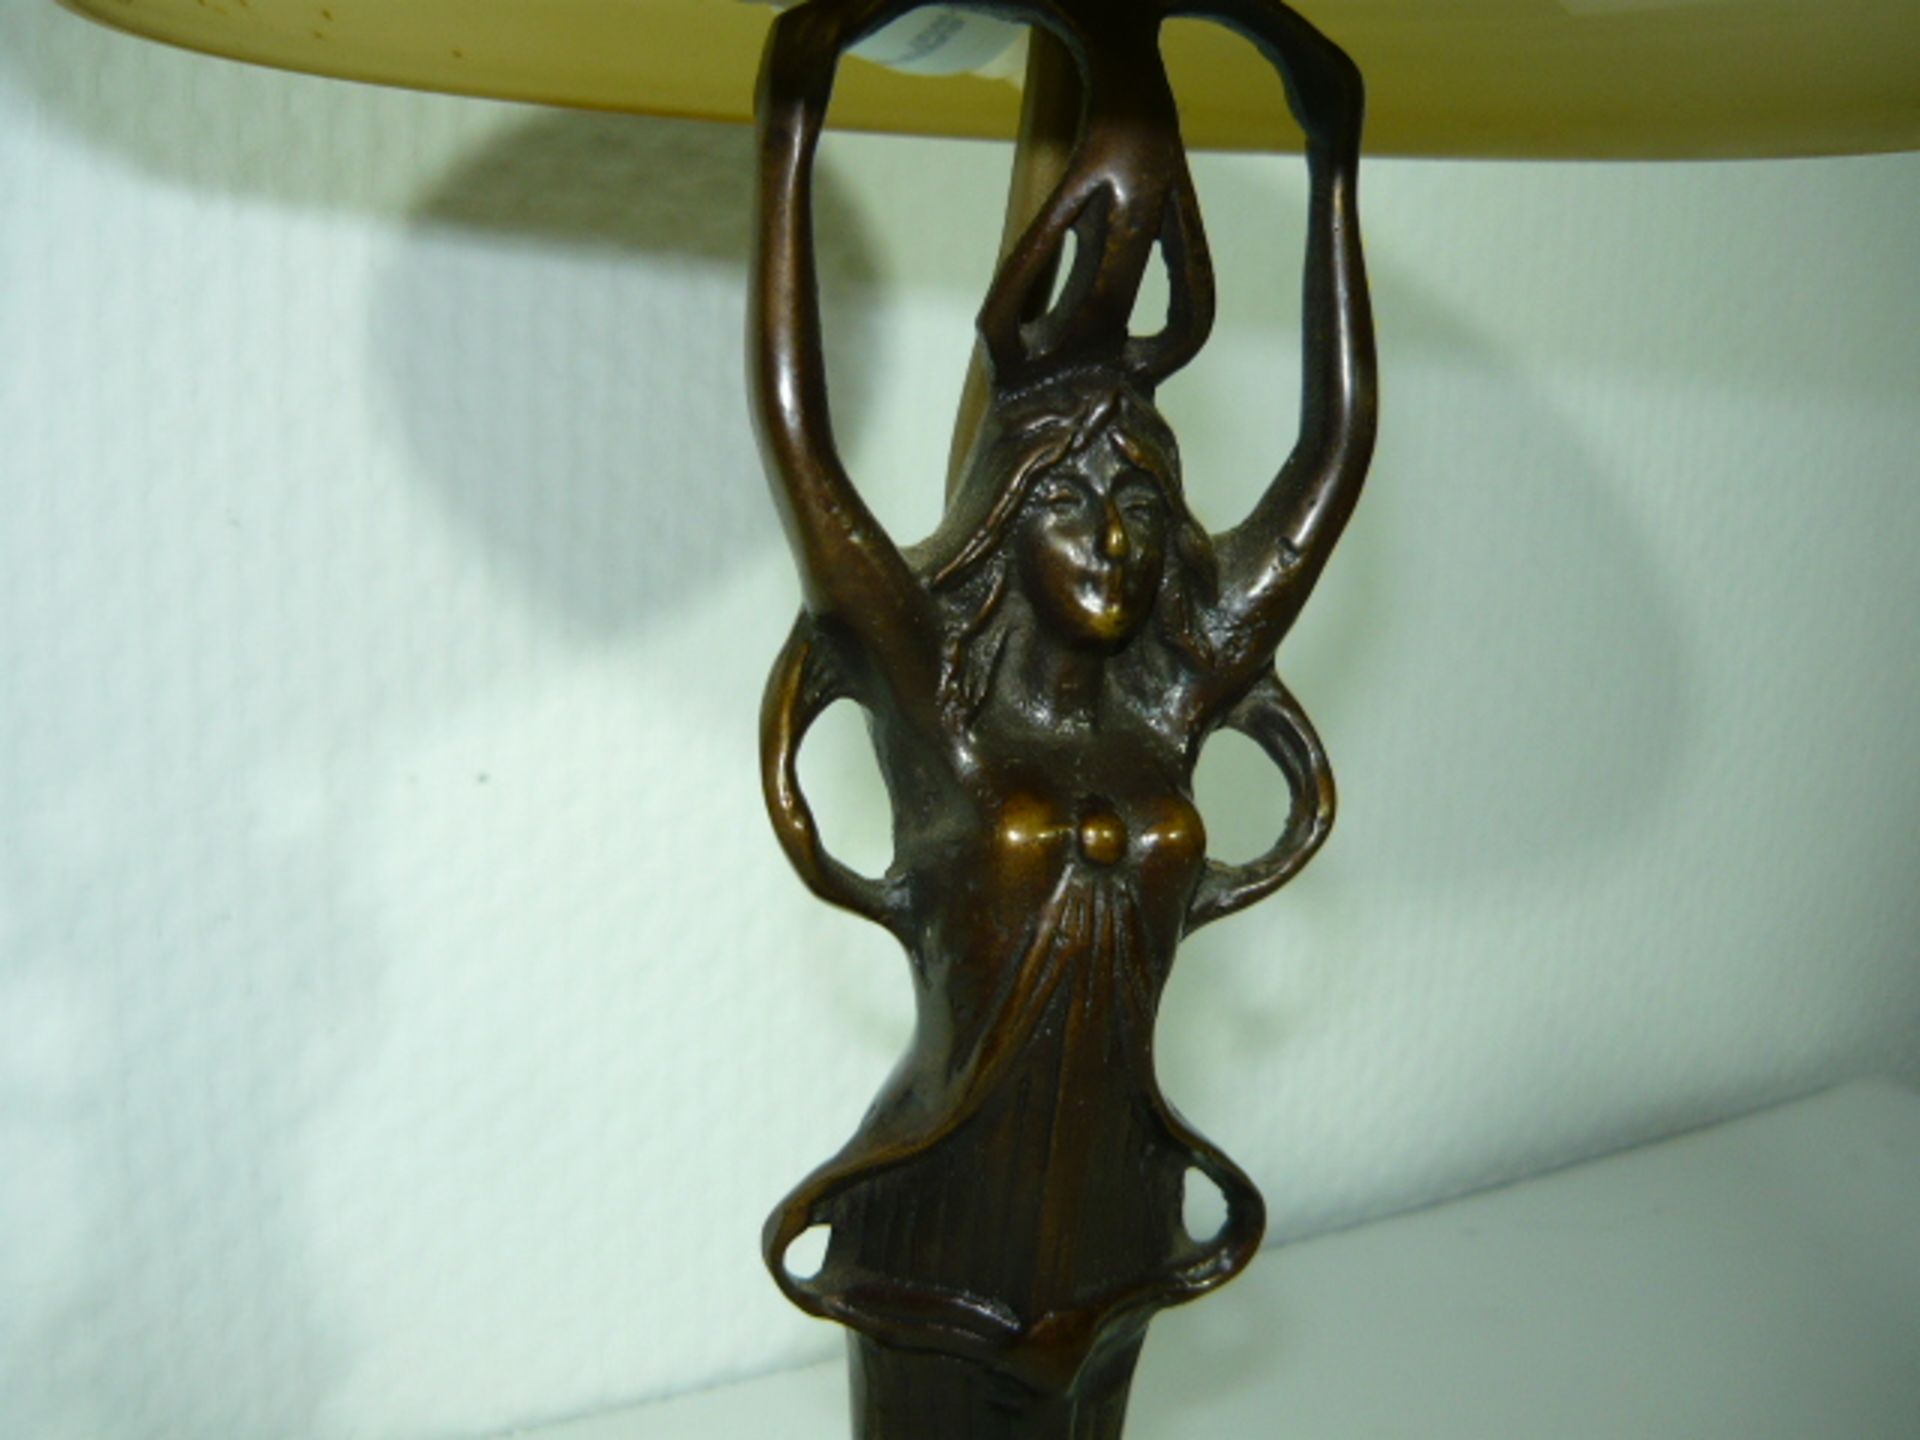 Tischlampe mit Glasschirm. Fuß in Form einer Frau im Jugendstil. Bronze. Lampe leuchtet. - Bild 2 aus 2